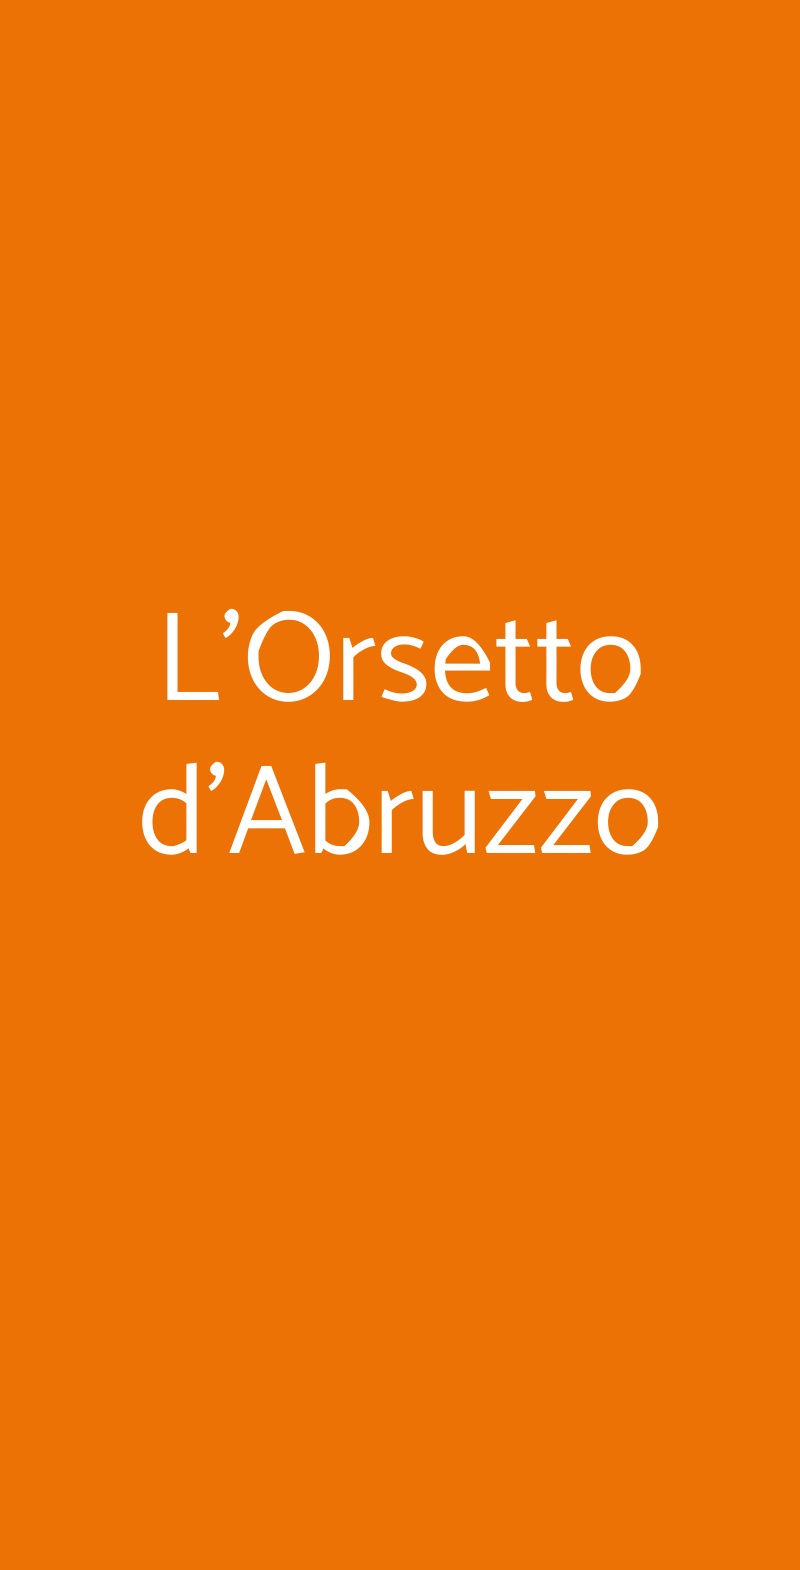 L'Orsetto d'Abruzzo Bologna menù 1 pagina